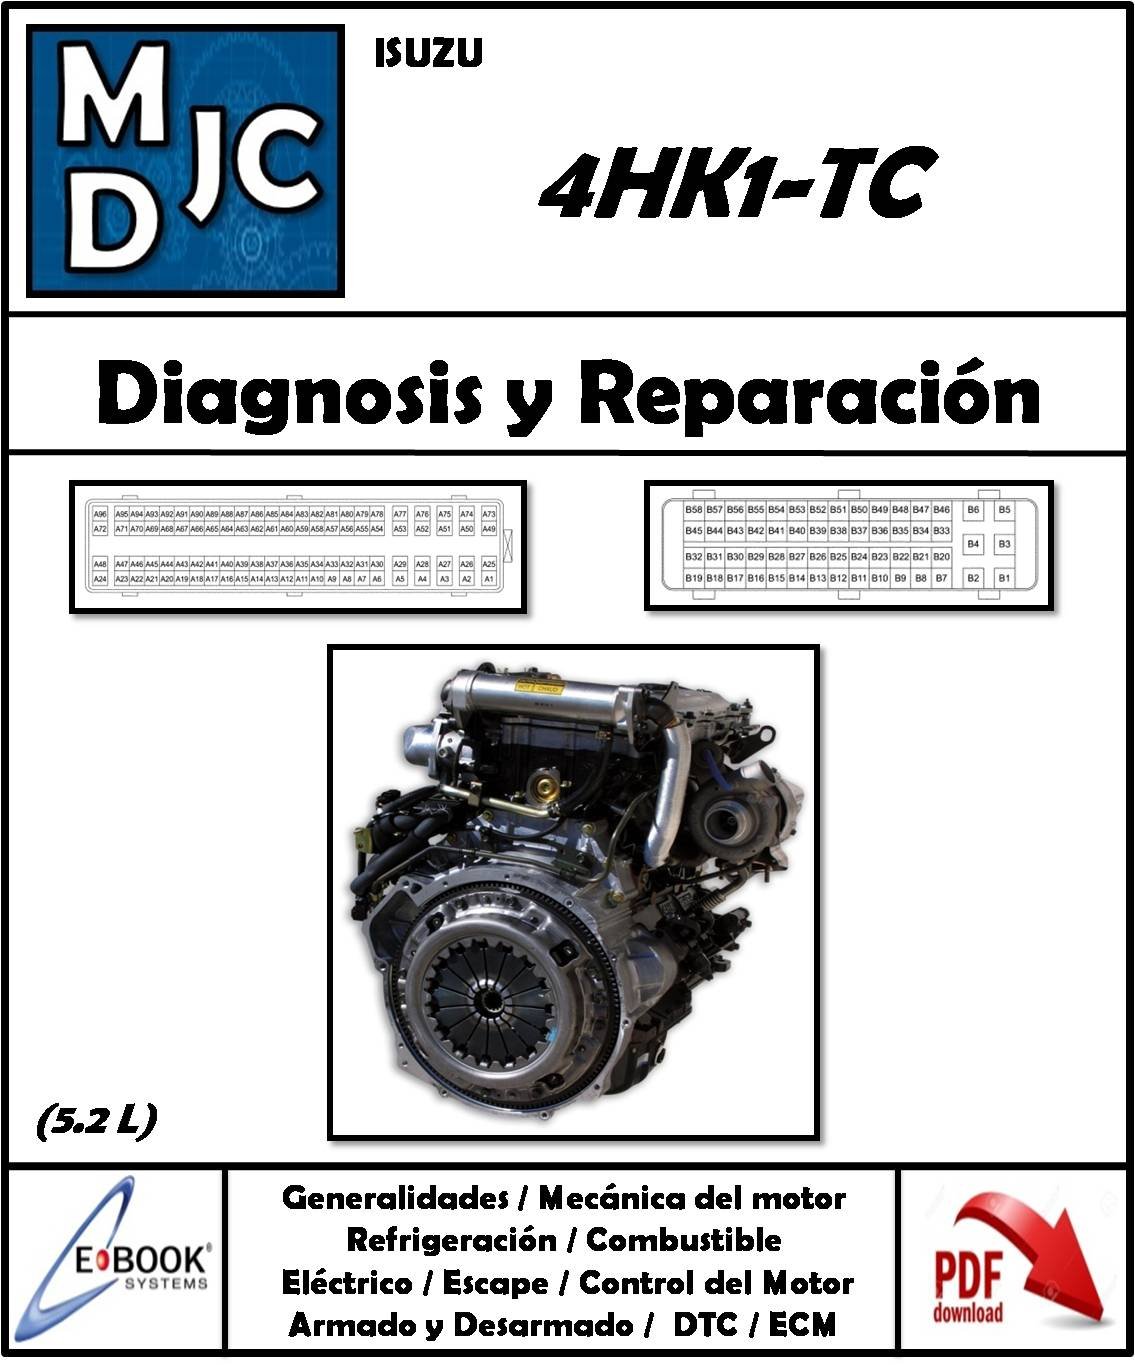 Isuzu  4HK1-TC  Motor  5.2 L